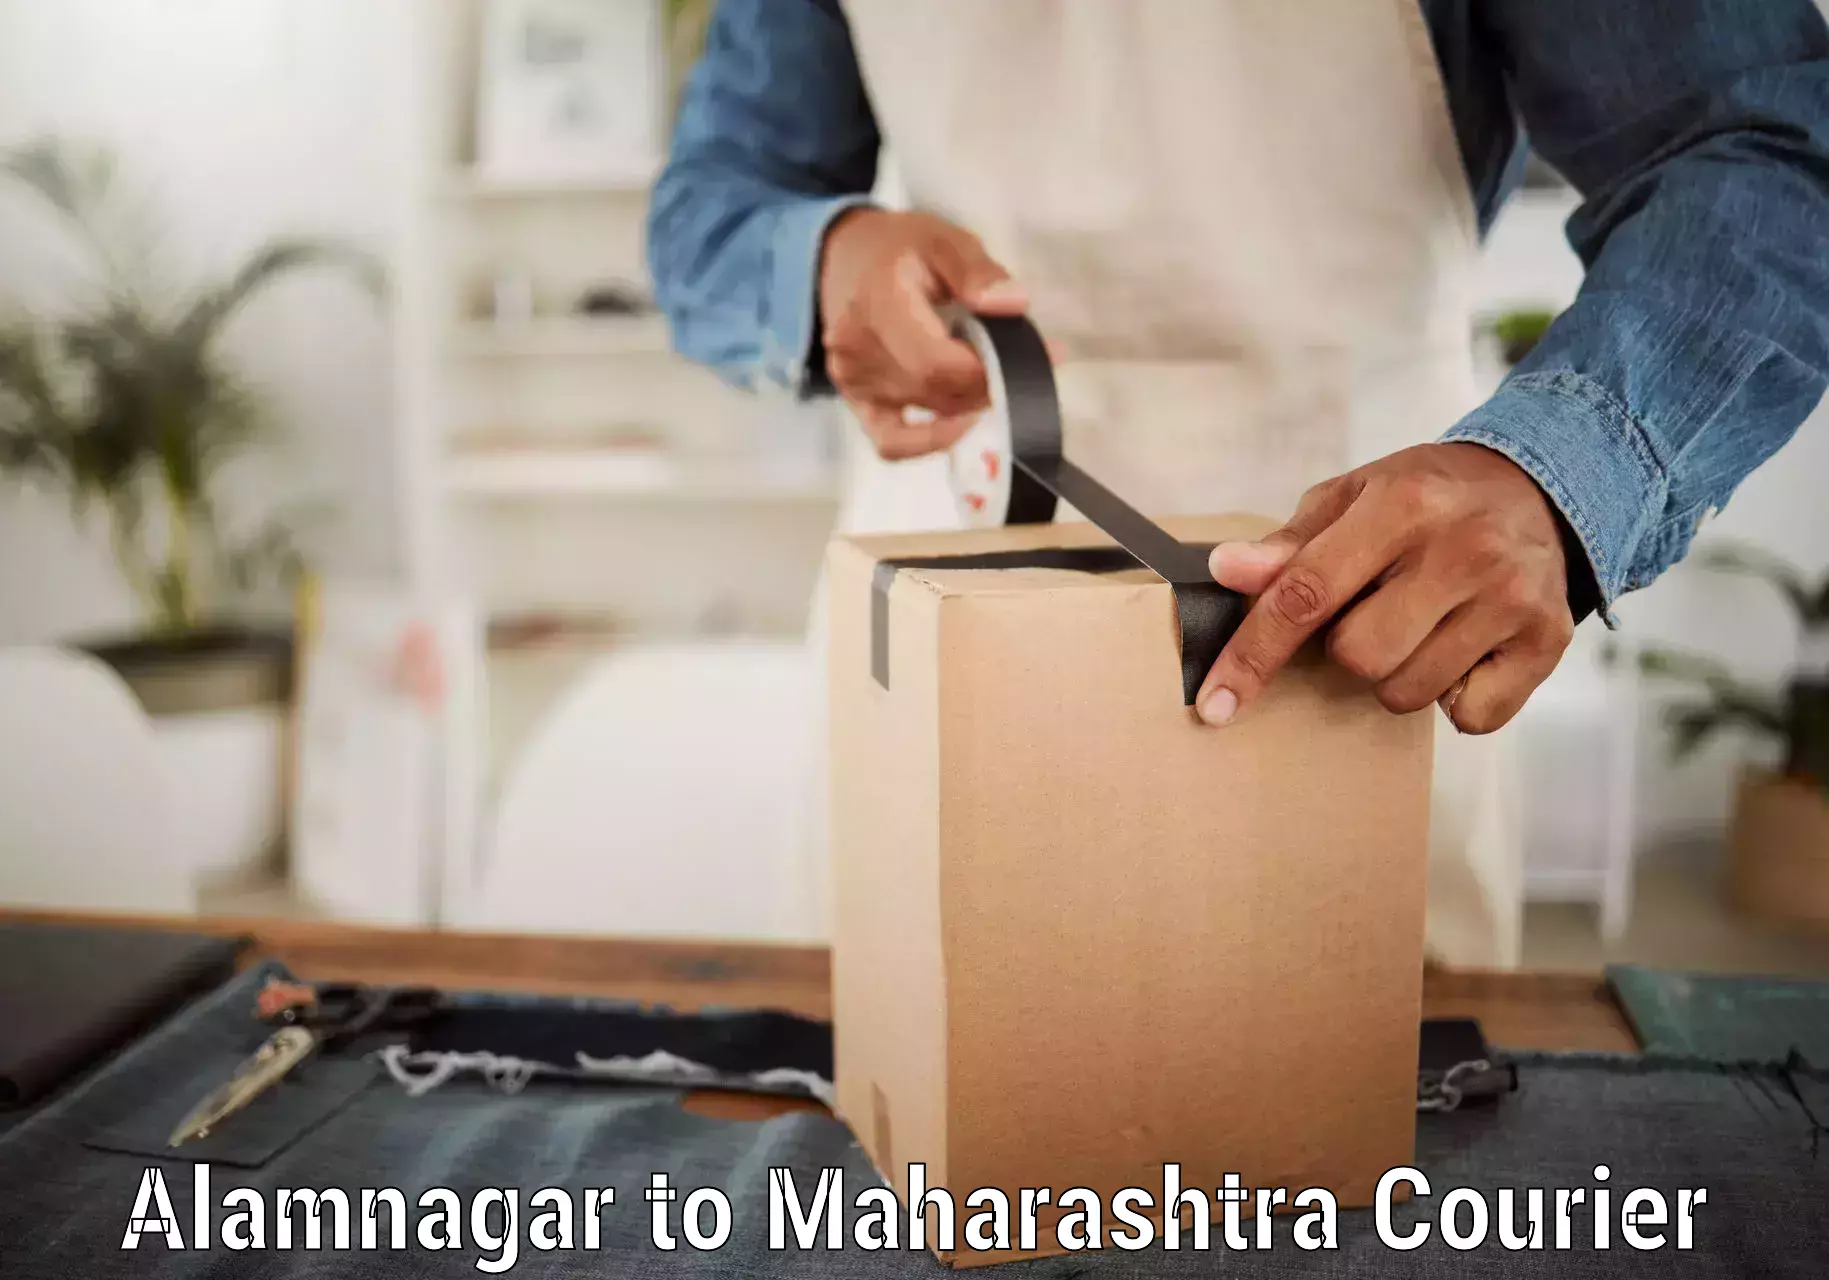 Bulk order courier Alamnagar to Maharashtra